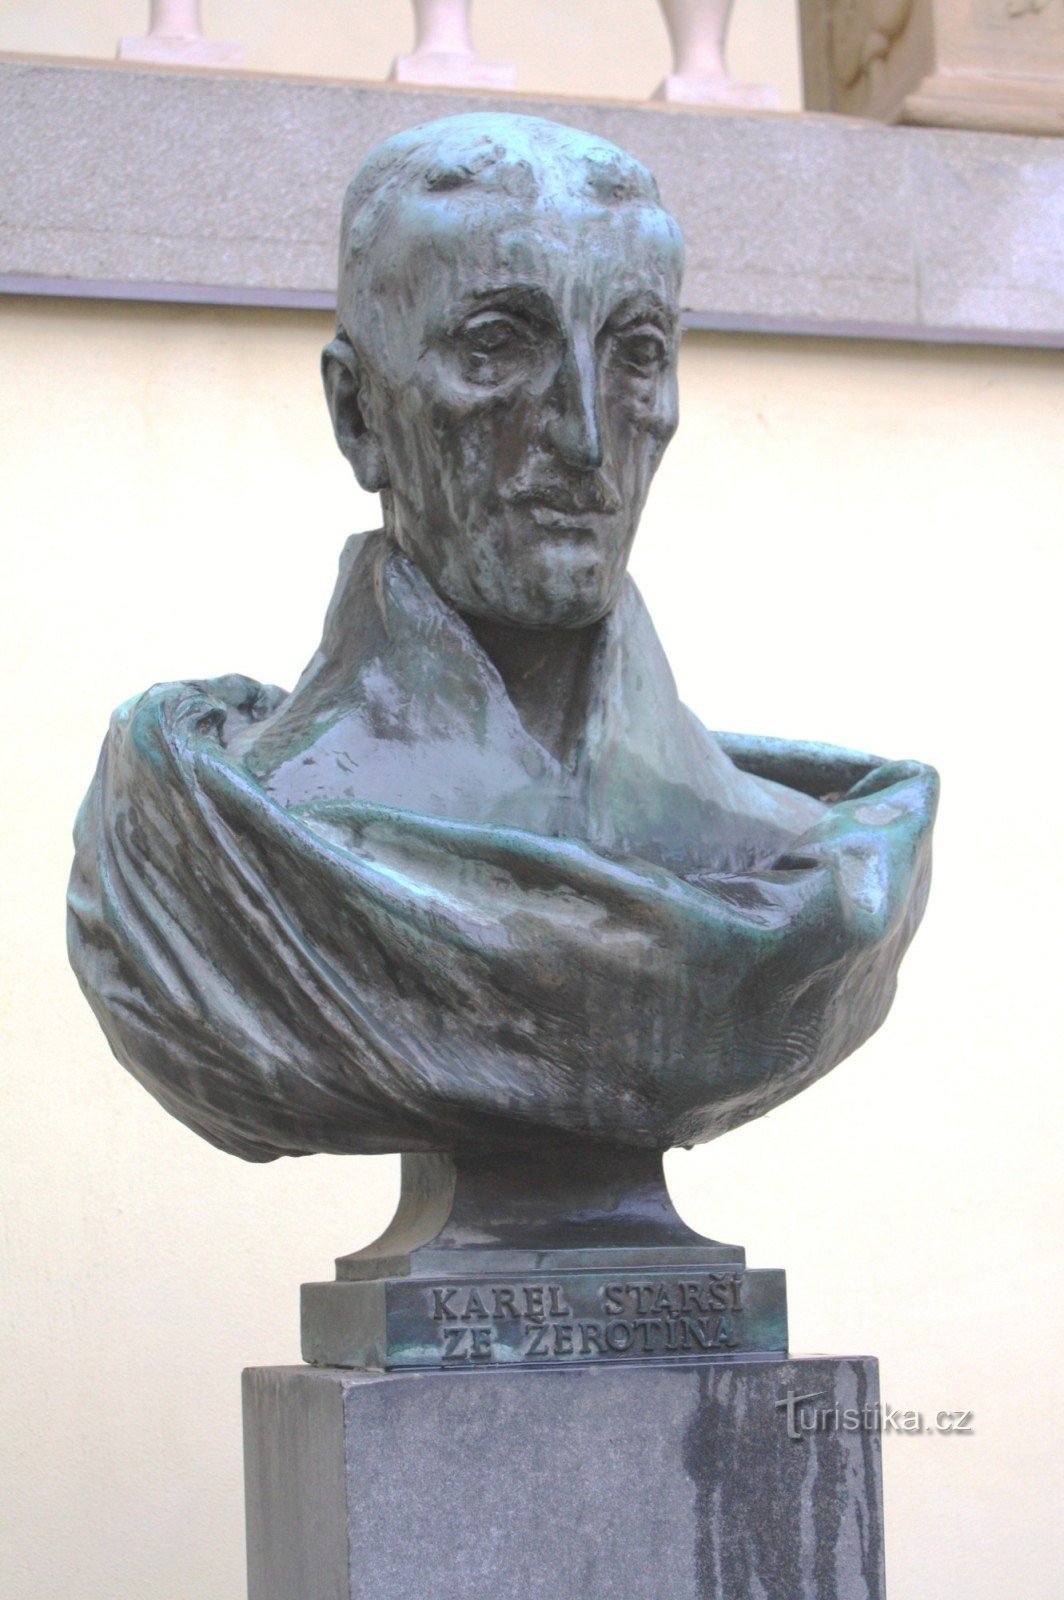 Brno - busto de Karel Starší de Žerotín